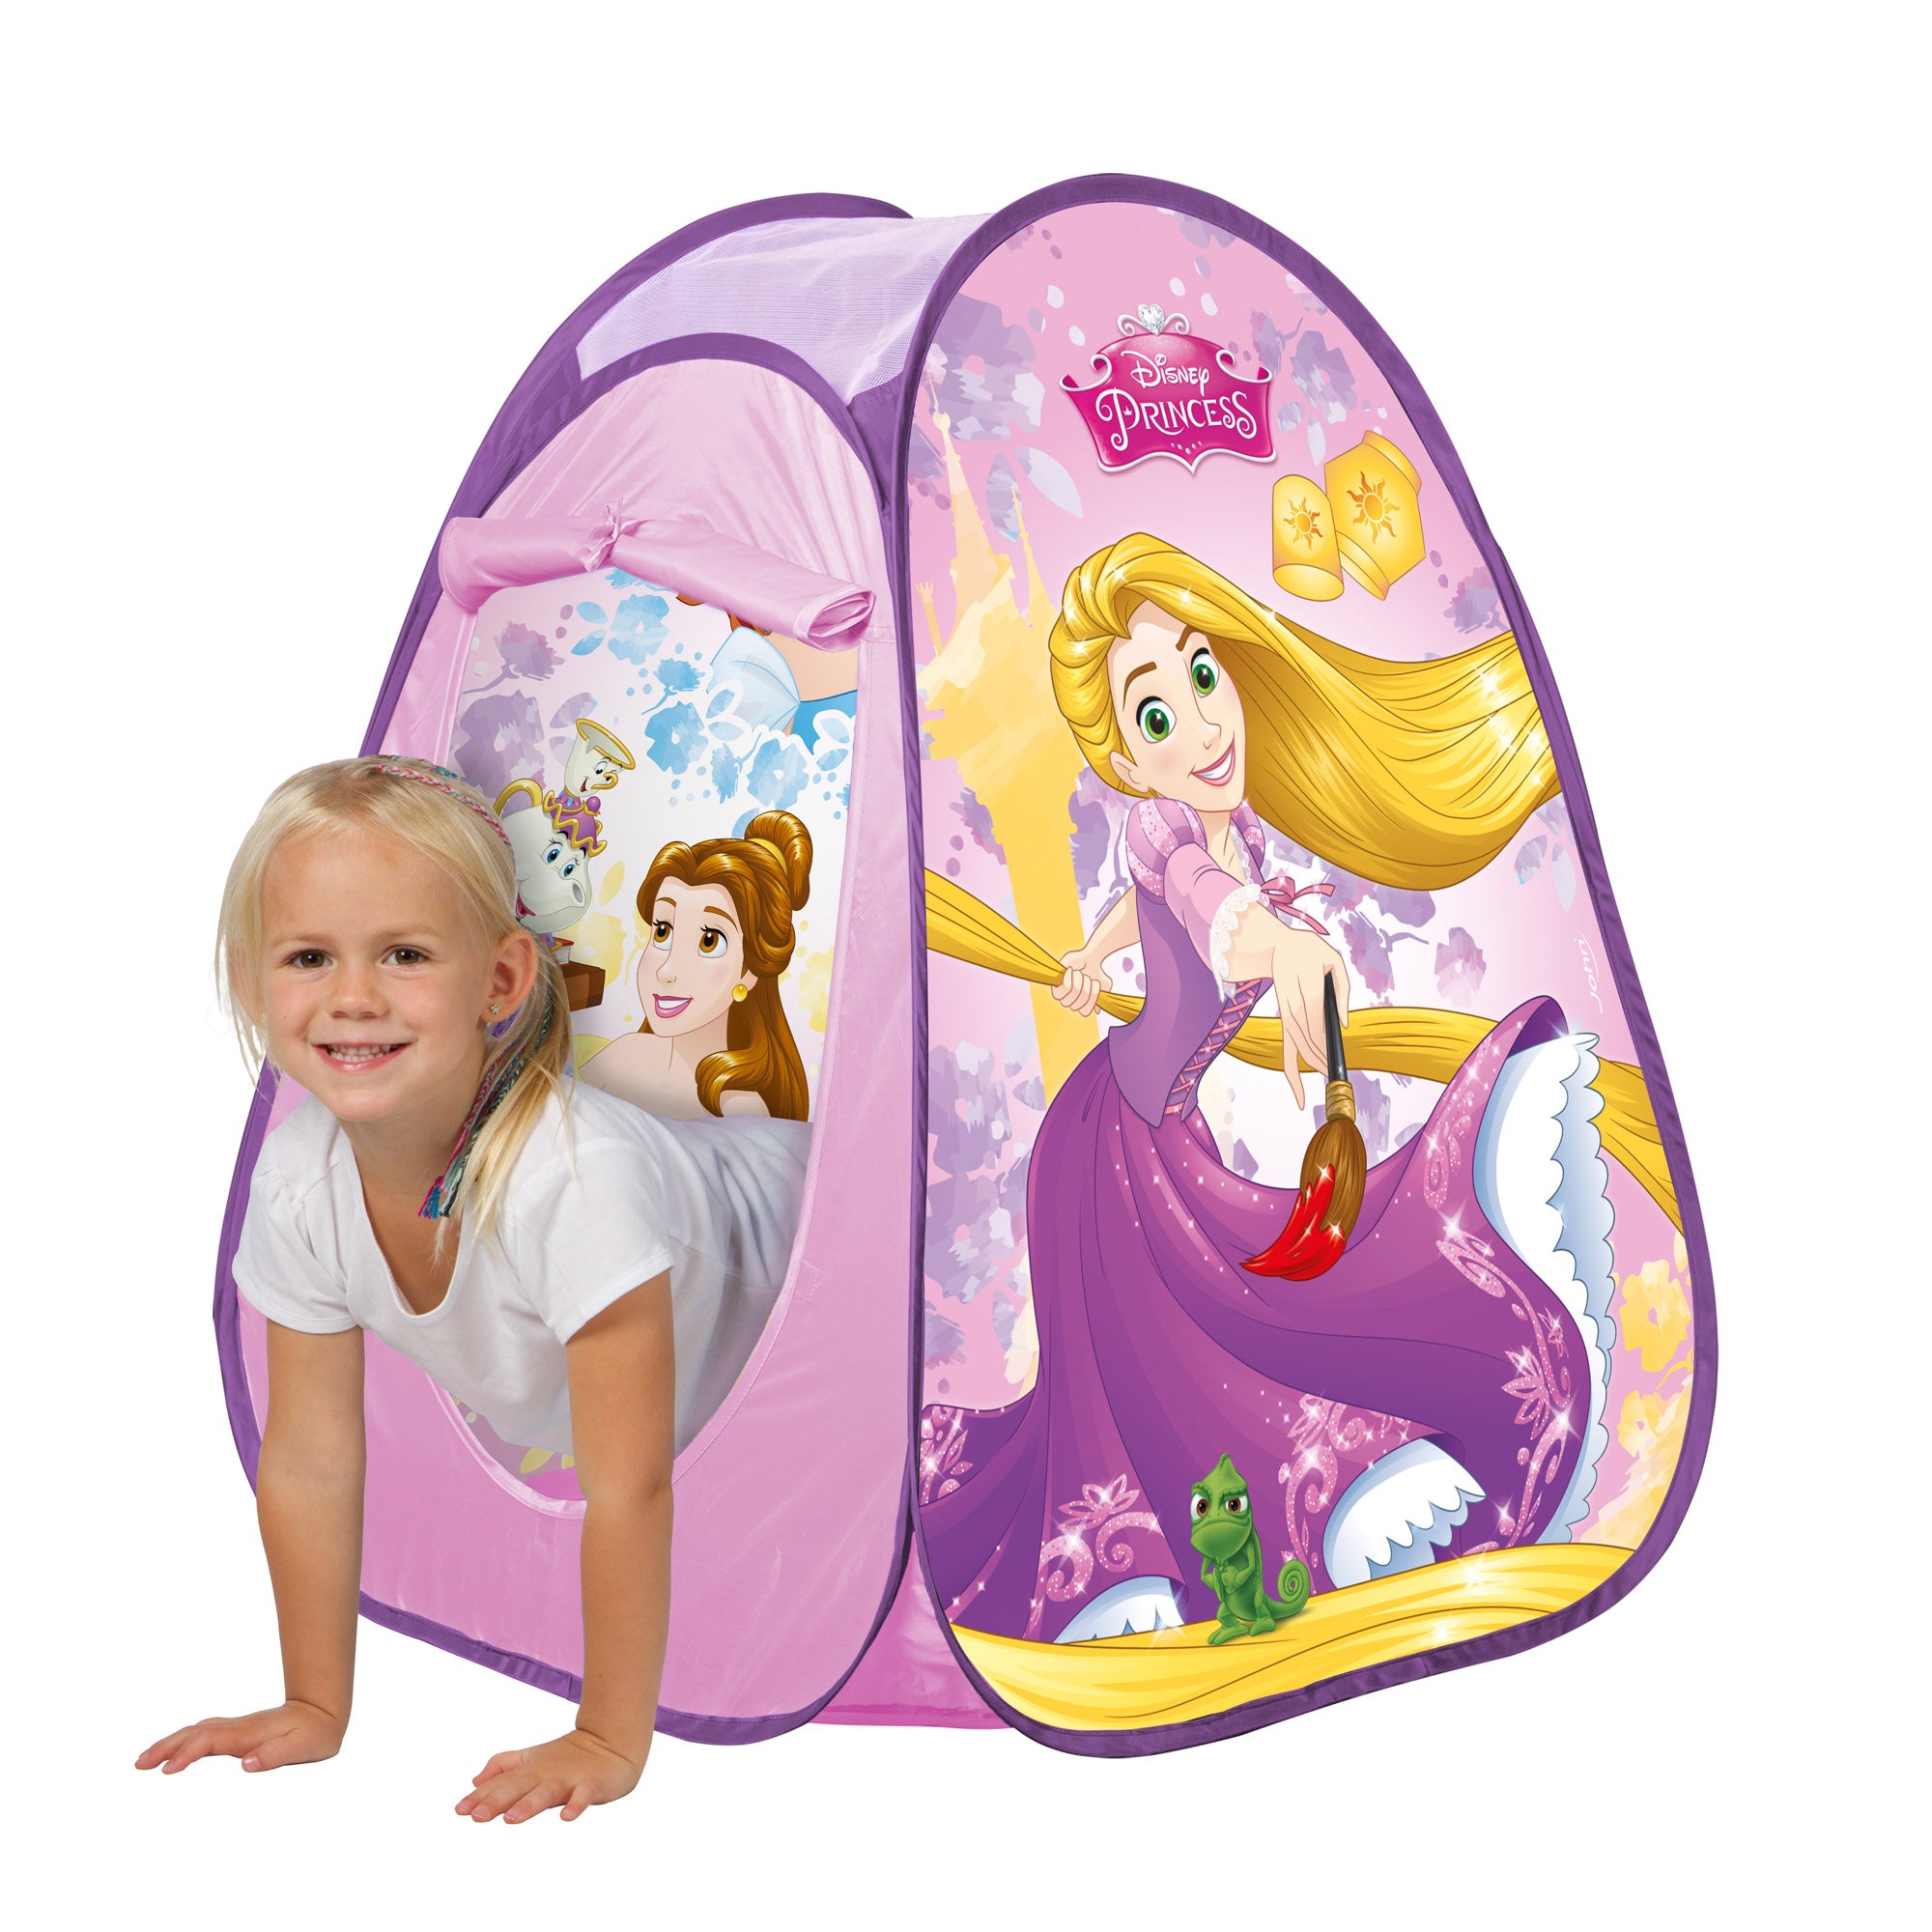 John - Disney Princess Pop Up Play Tent